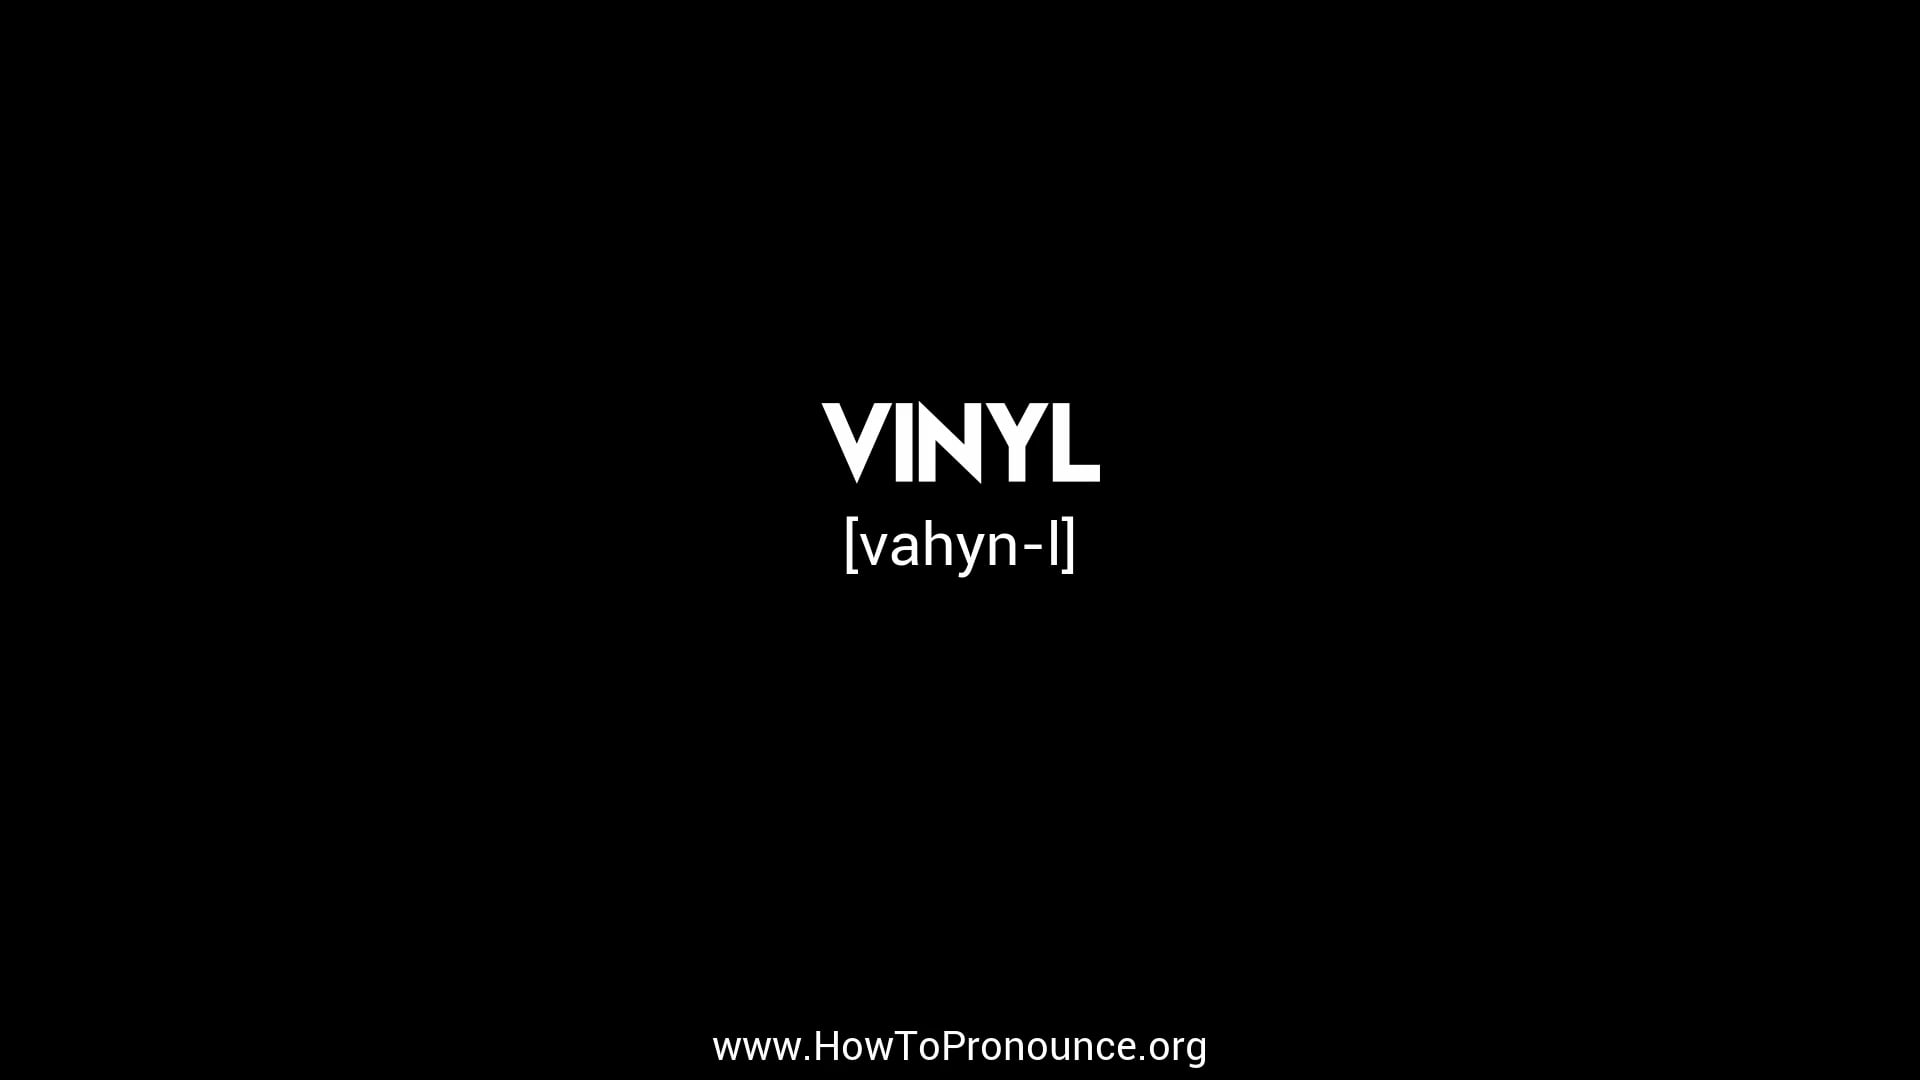 How to Pronounce "vinyl" Vimeo